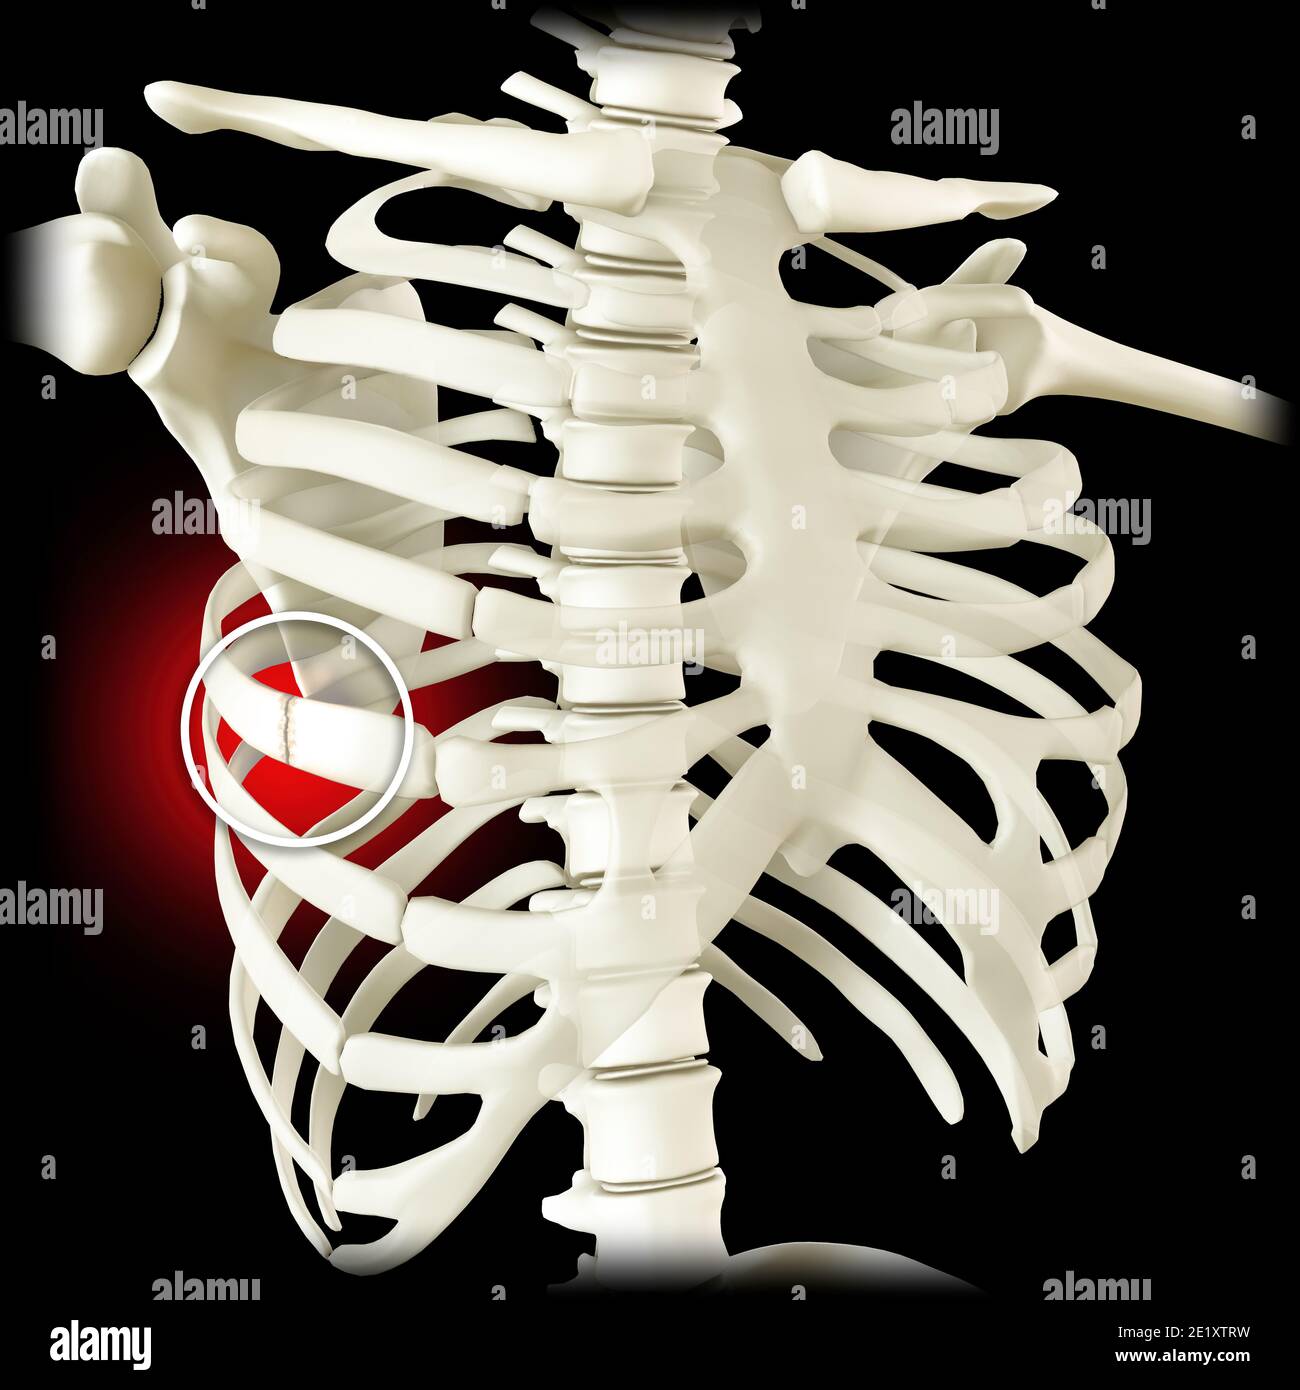 Anatomia e corpo umano. Separazione costochondrica, nervatura separata. Nervature rotte e fratturate. Le ossa nella gabbia delle costole si rompono o si rompono. Polmoni toracici Foto Stock